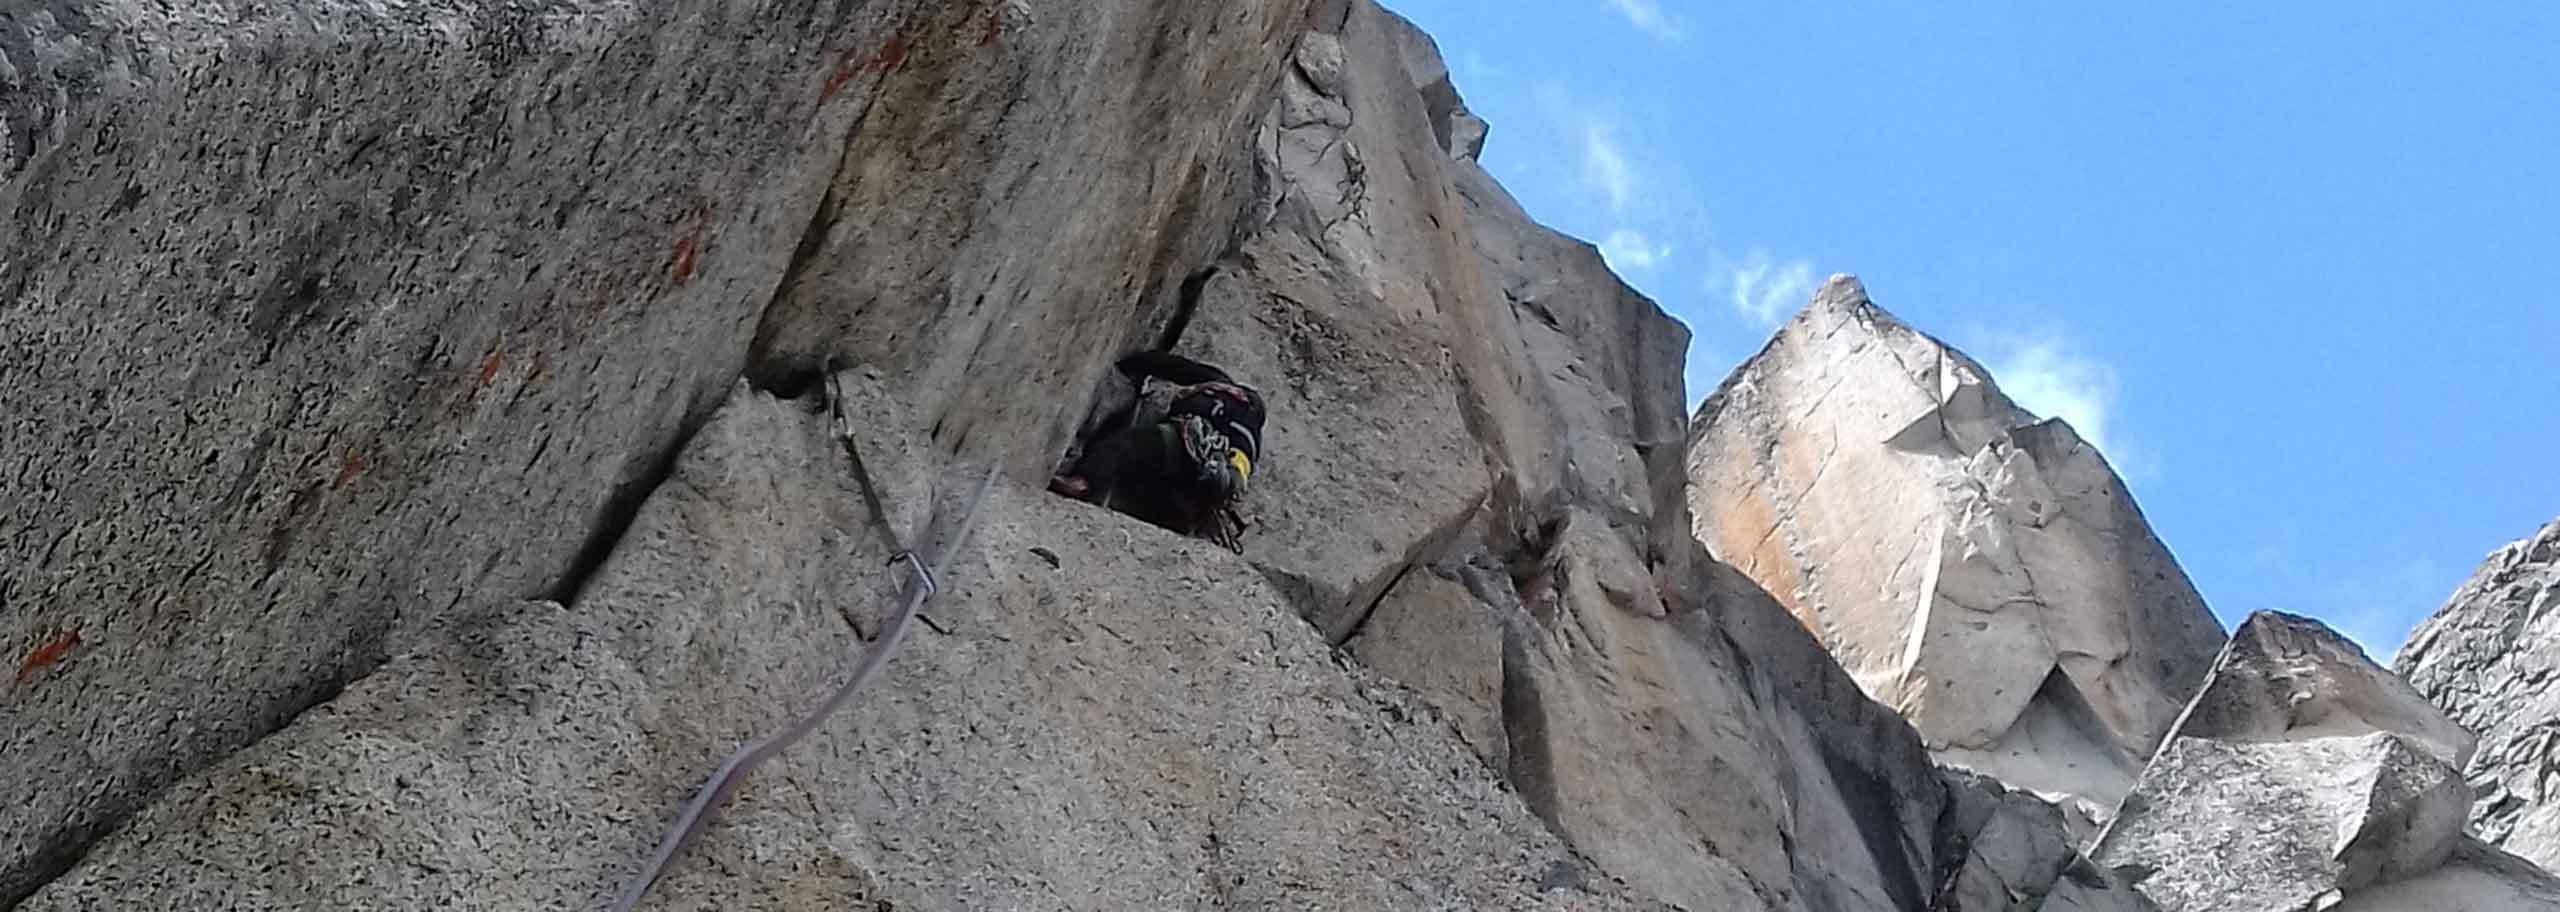 Adamello Rock Climbing Experience